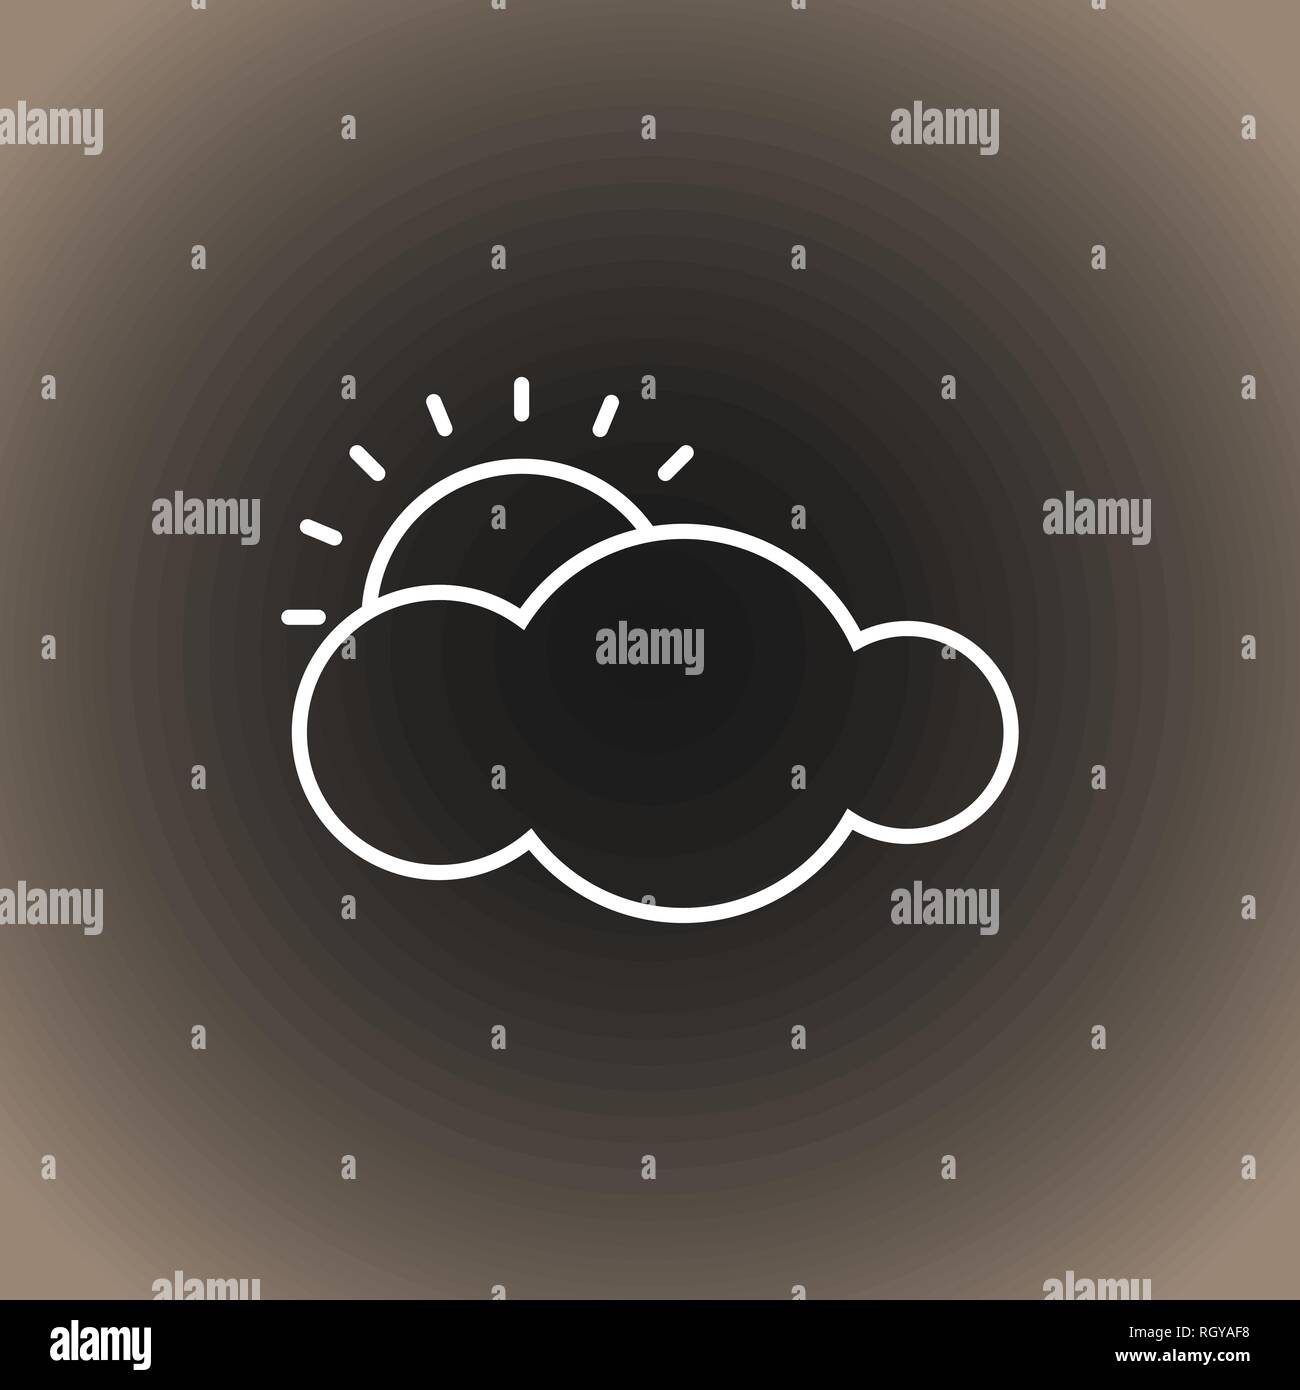 Profilo icona meteo. Il Cloud e il sole sul nero/grigio scuro e beige gradiente dello sfondo. Illustrazione vettoriale EPS10. Illustrazione Vettoriale